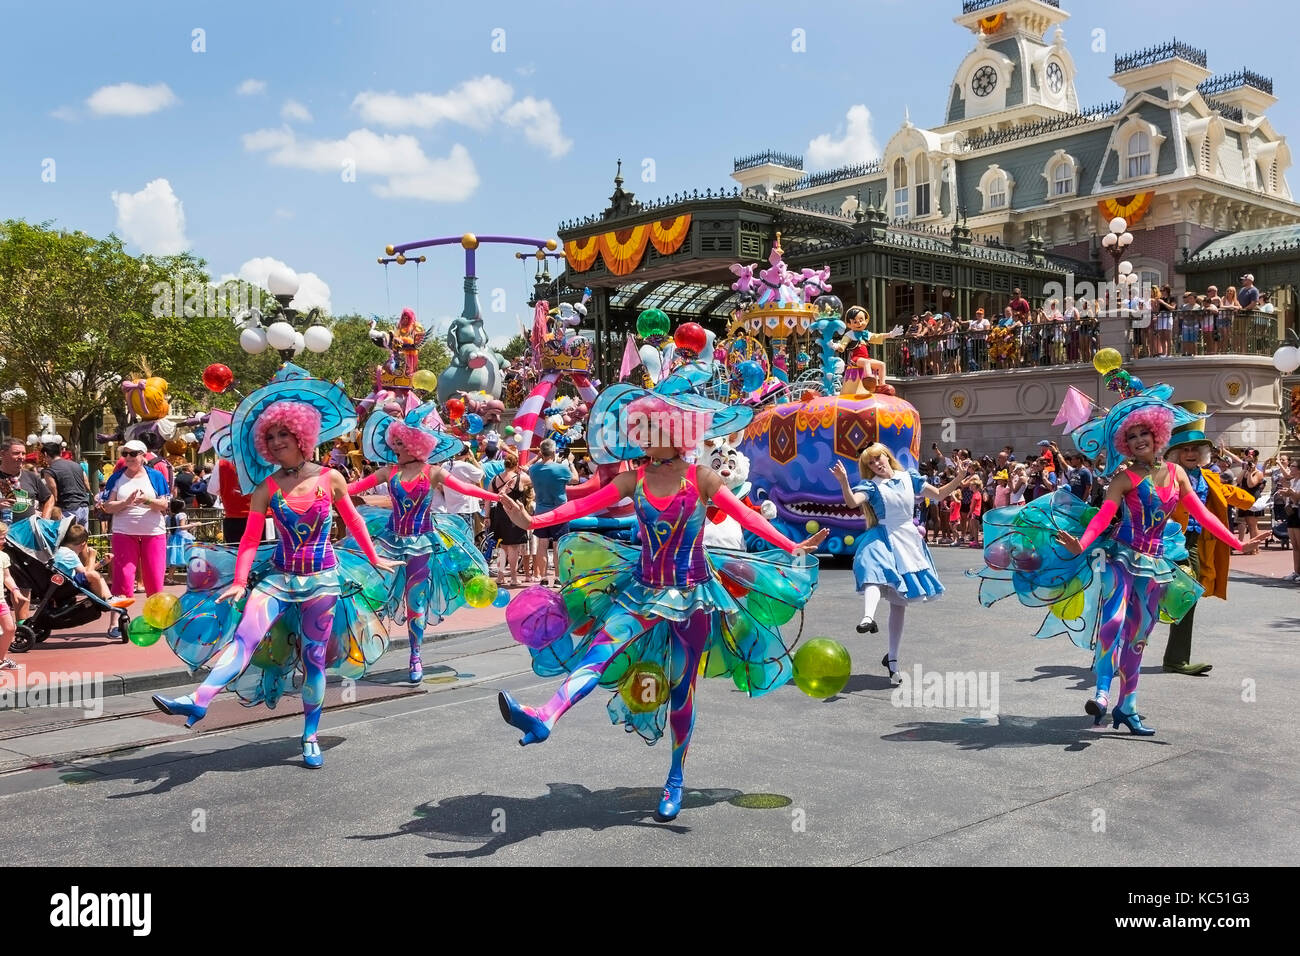 Walt Disney's Magic Kingdom Theme Park, Orlando, Florida, EE.UU. y el desfile de cuento de hadas "Carnaval de fantasía' Foto de stock